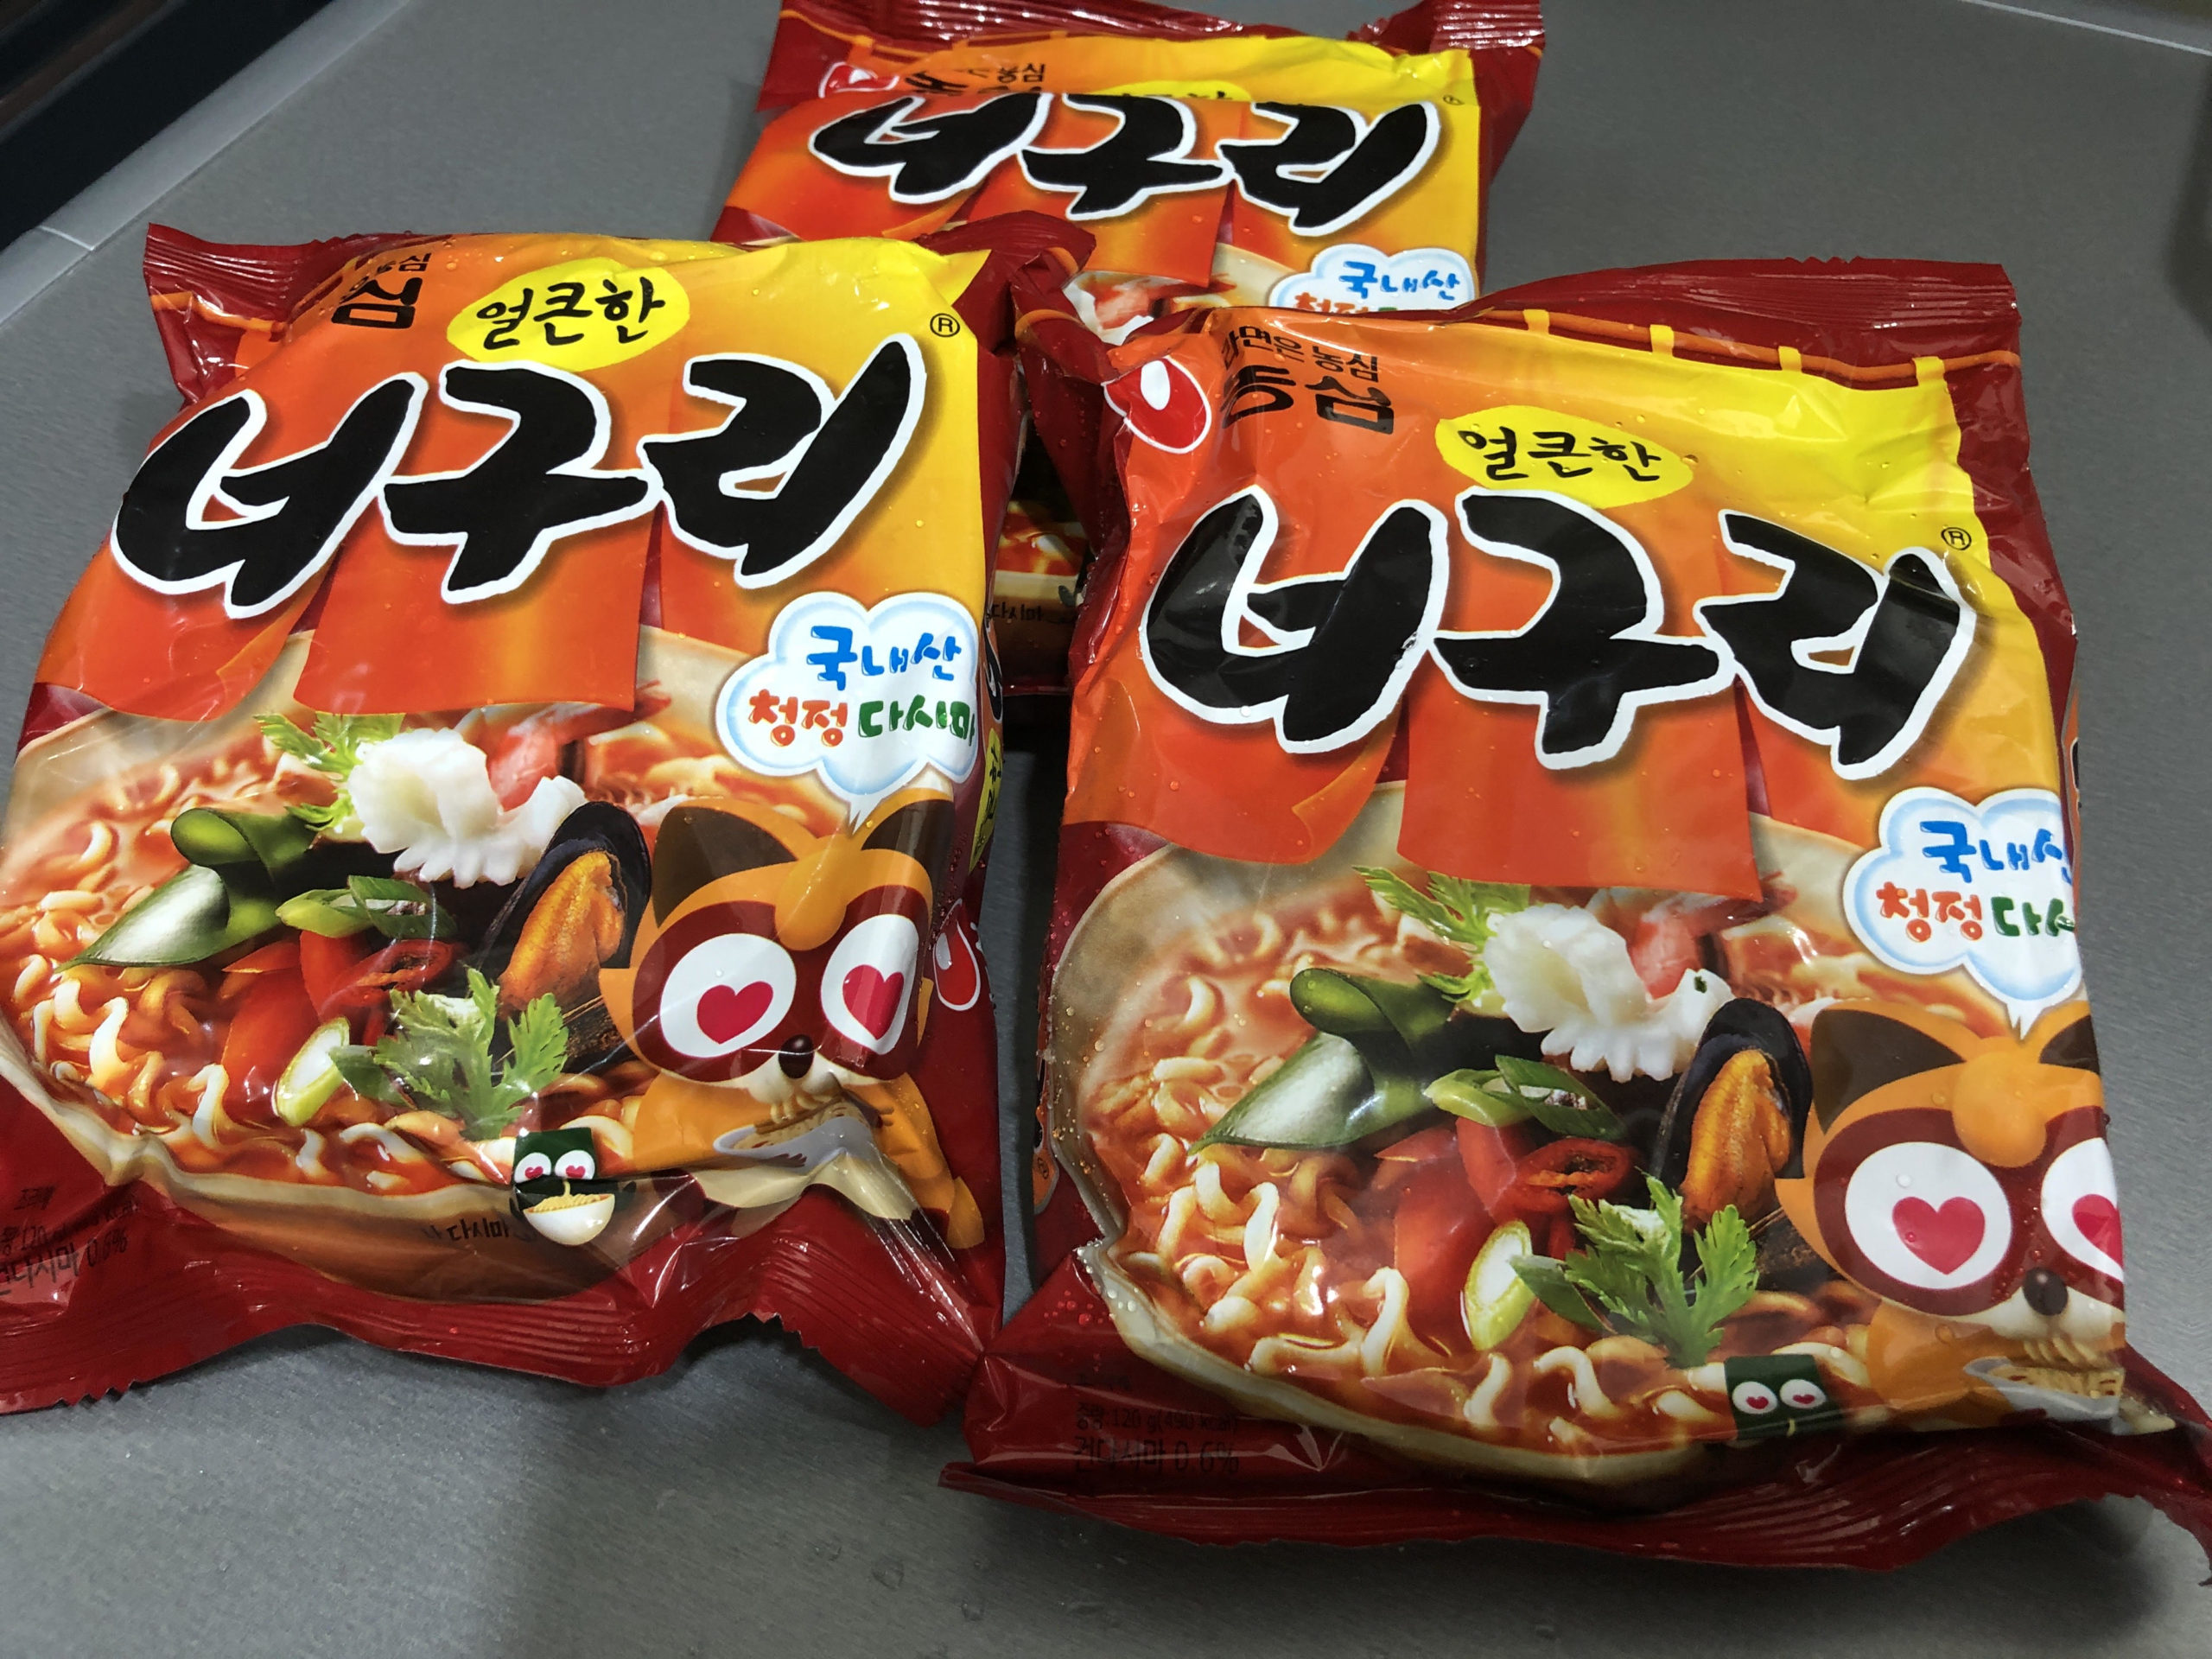 「モチモチの太麺が特徴の韓国インスタント麺」NONGSHIMのノグリ